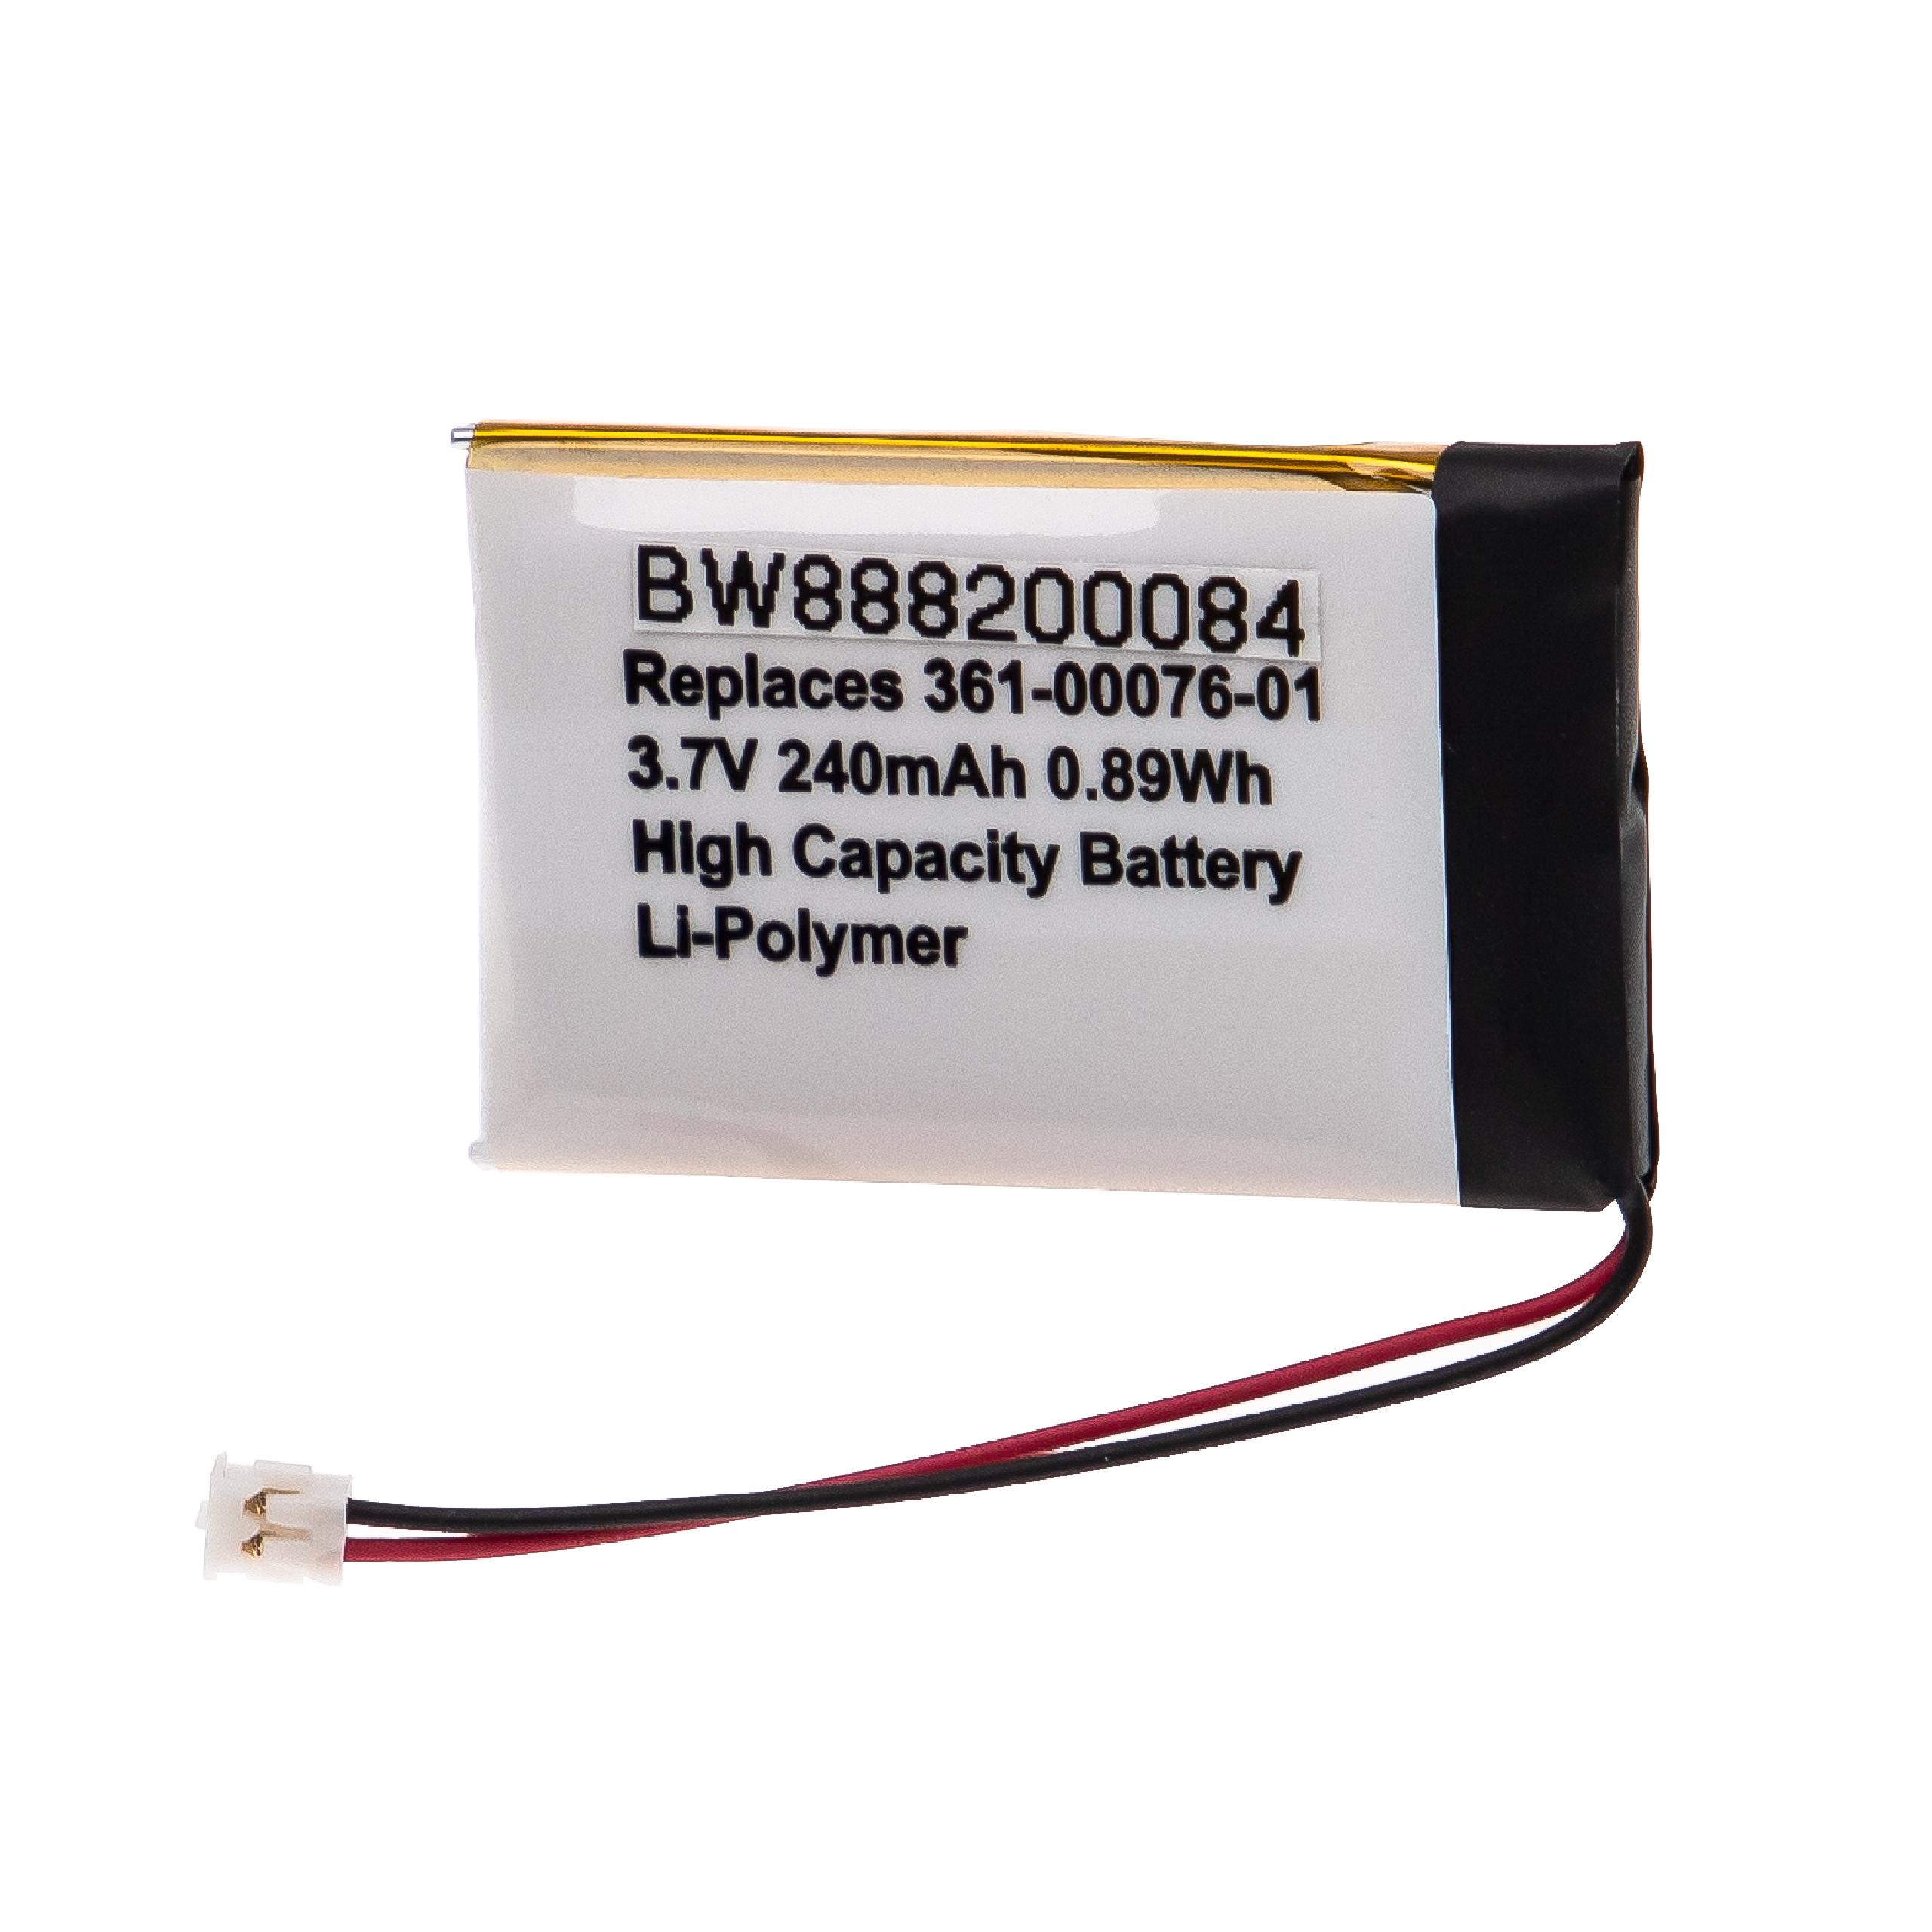 Batterie remplace Garmin 361-00076-01 pour montre connectée - 240mAh 3,7V Li-polymère